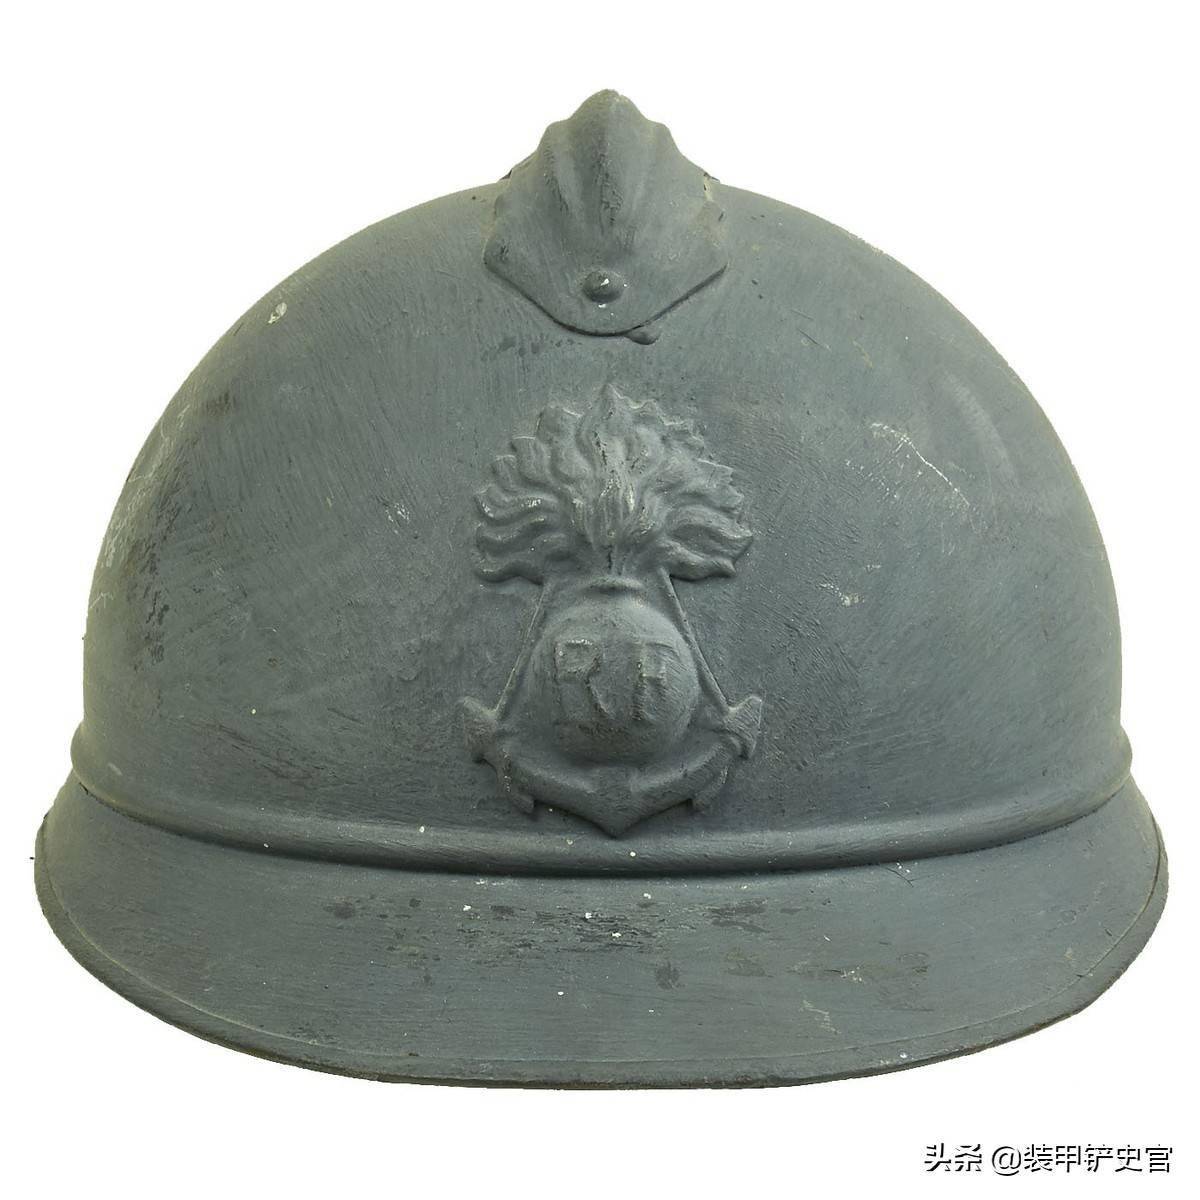 现代军用钢盔的鼻祖:法国今天为何还装备100多年前的古董钢盔?